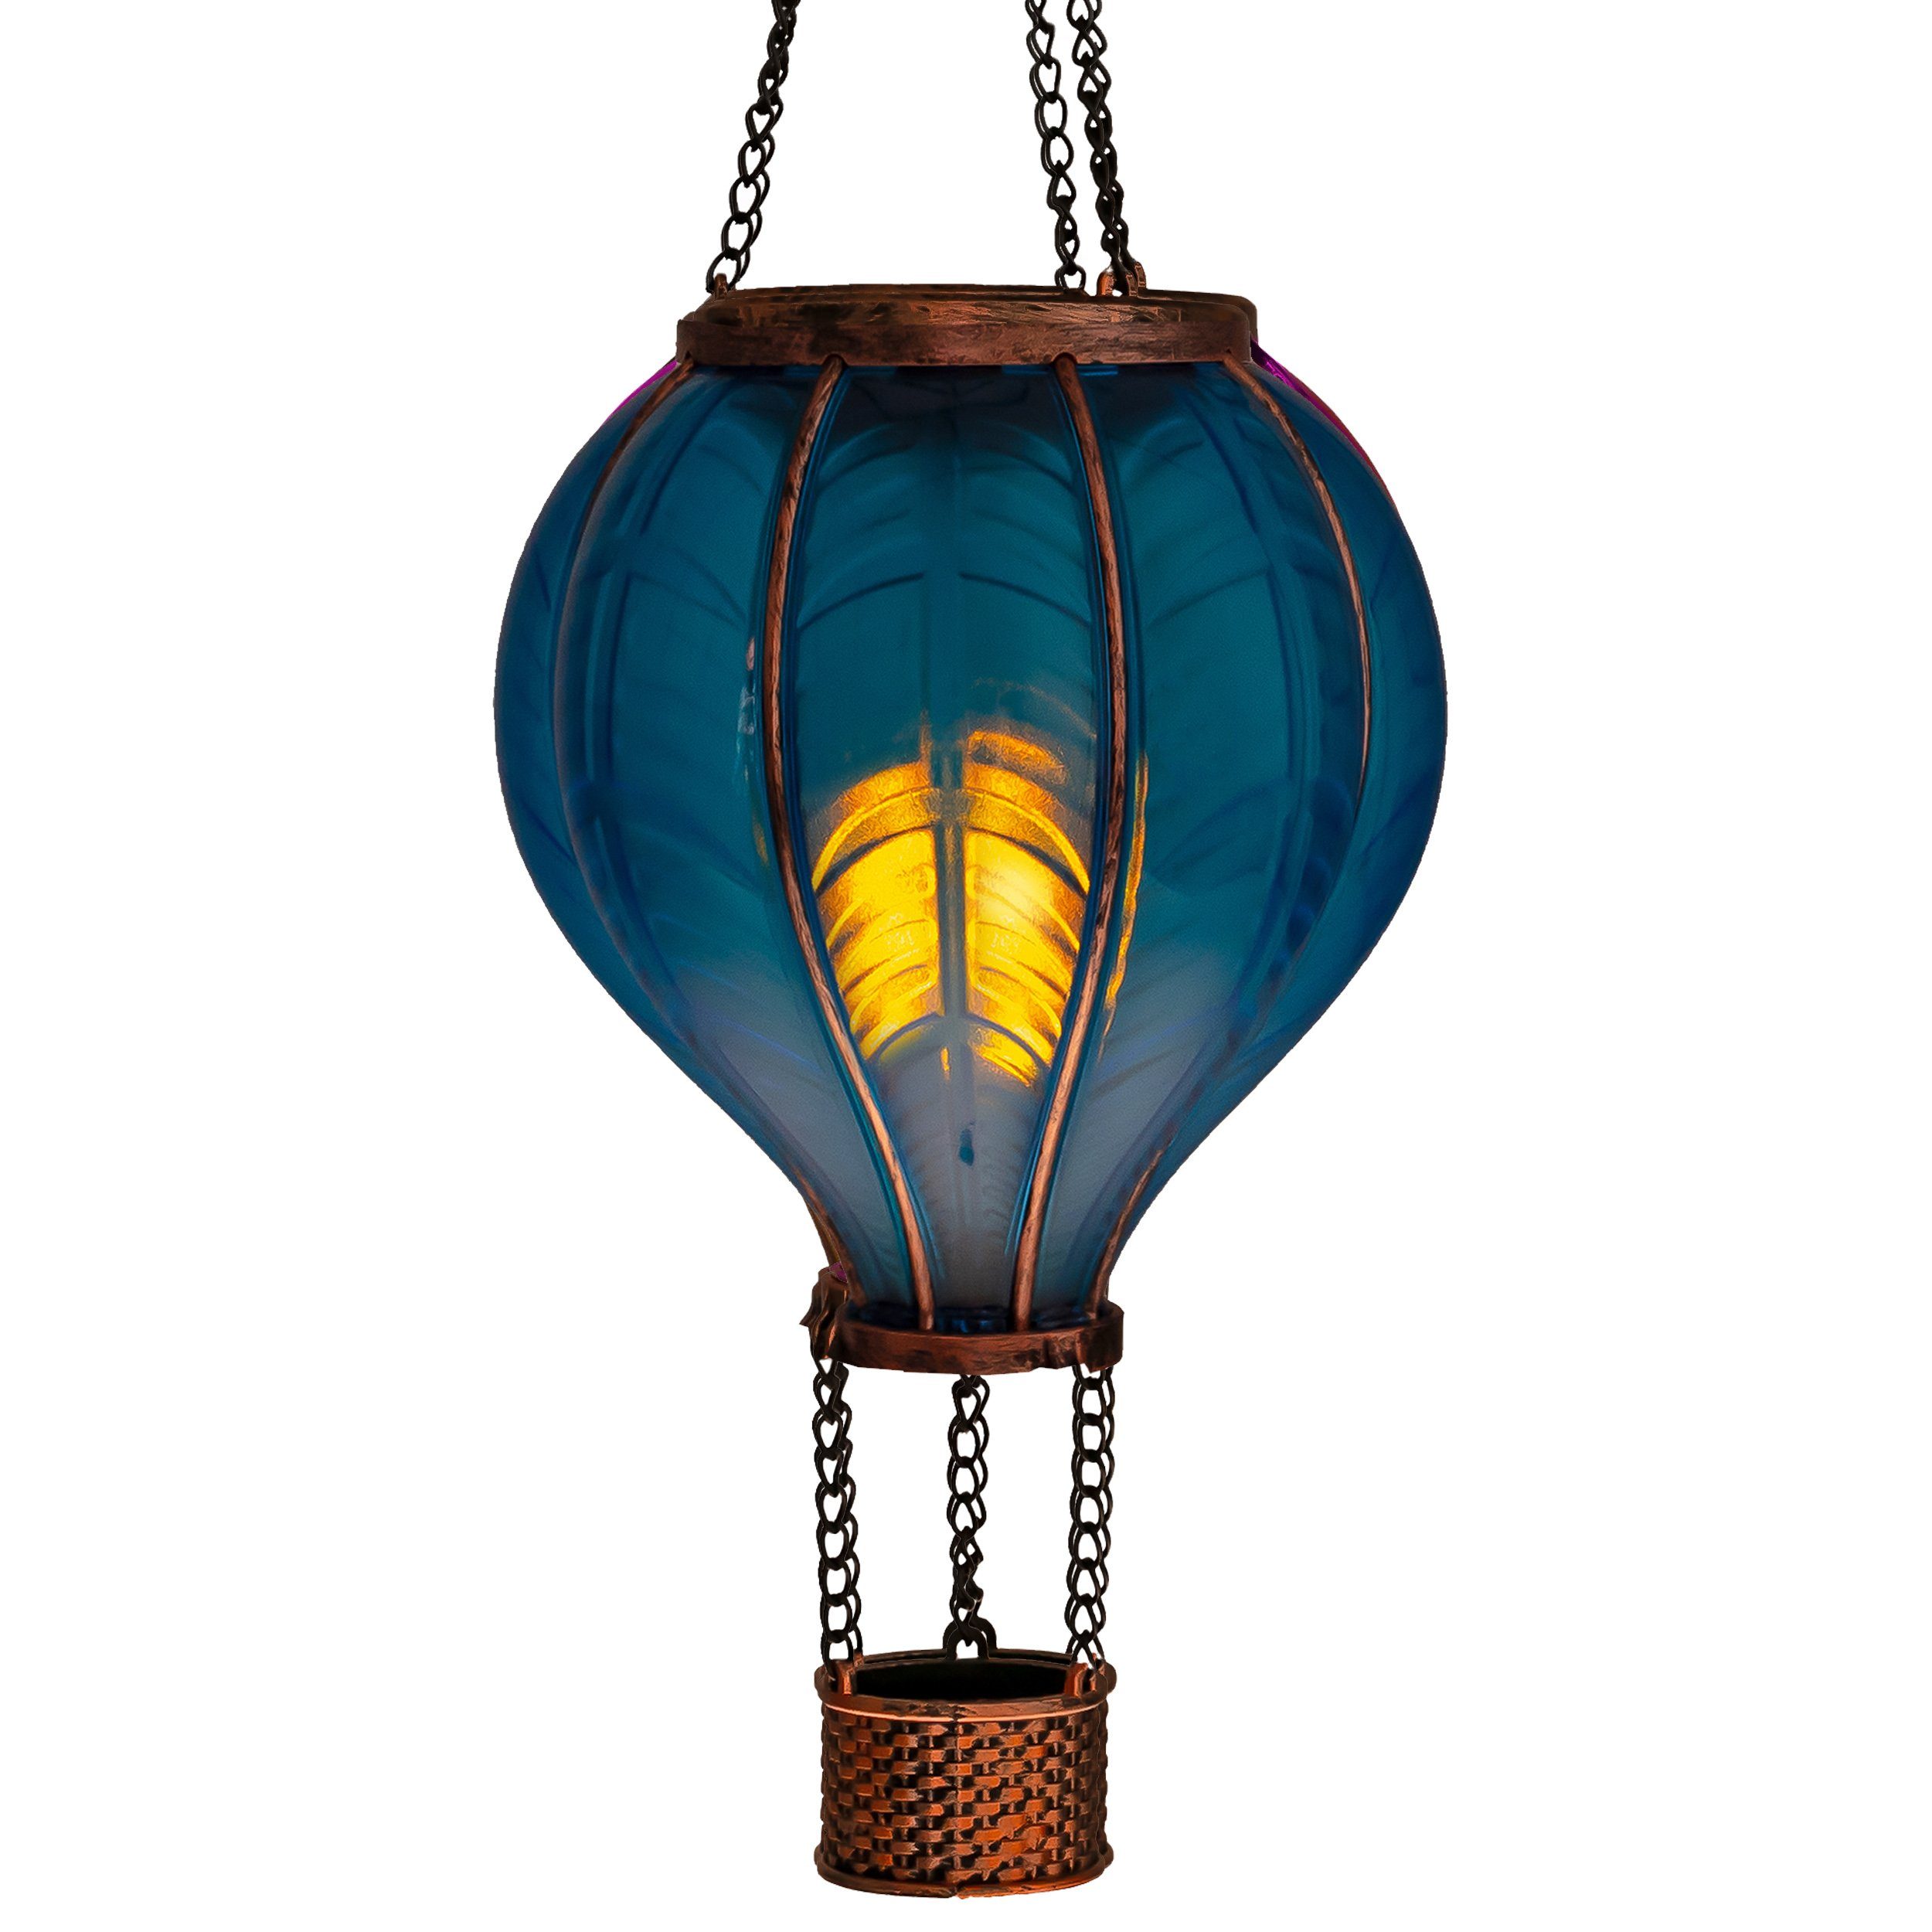 IC Gardenworld LED Solarleuchte LED Solar Heißluftballon mit Flammeneffekt Beleuchtung zum Aufhängen, LED fest integriert, warm-weiß mit Flammeneffekt, 20 warm-weiße Lichter, inkl. Metallkette, Gesamthöhe ca. 40,5 cm blau